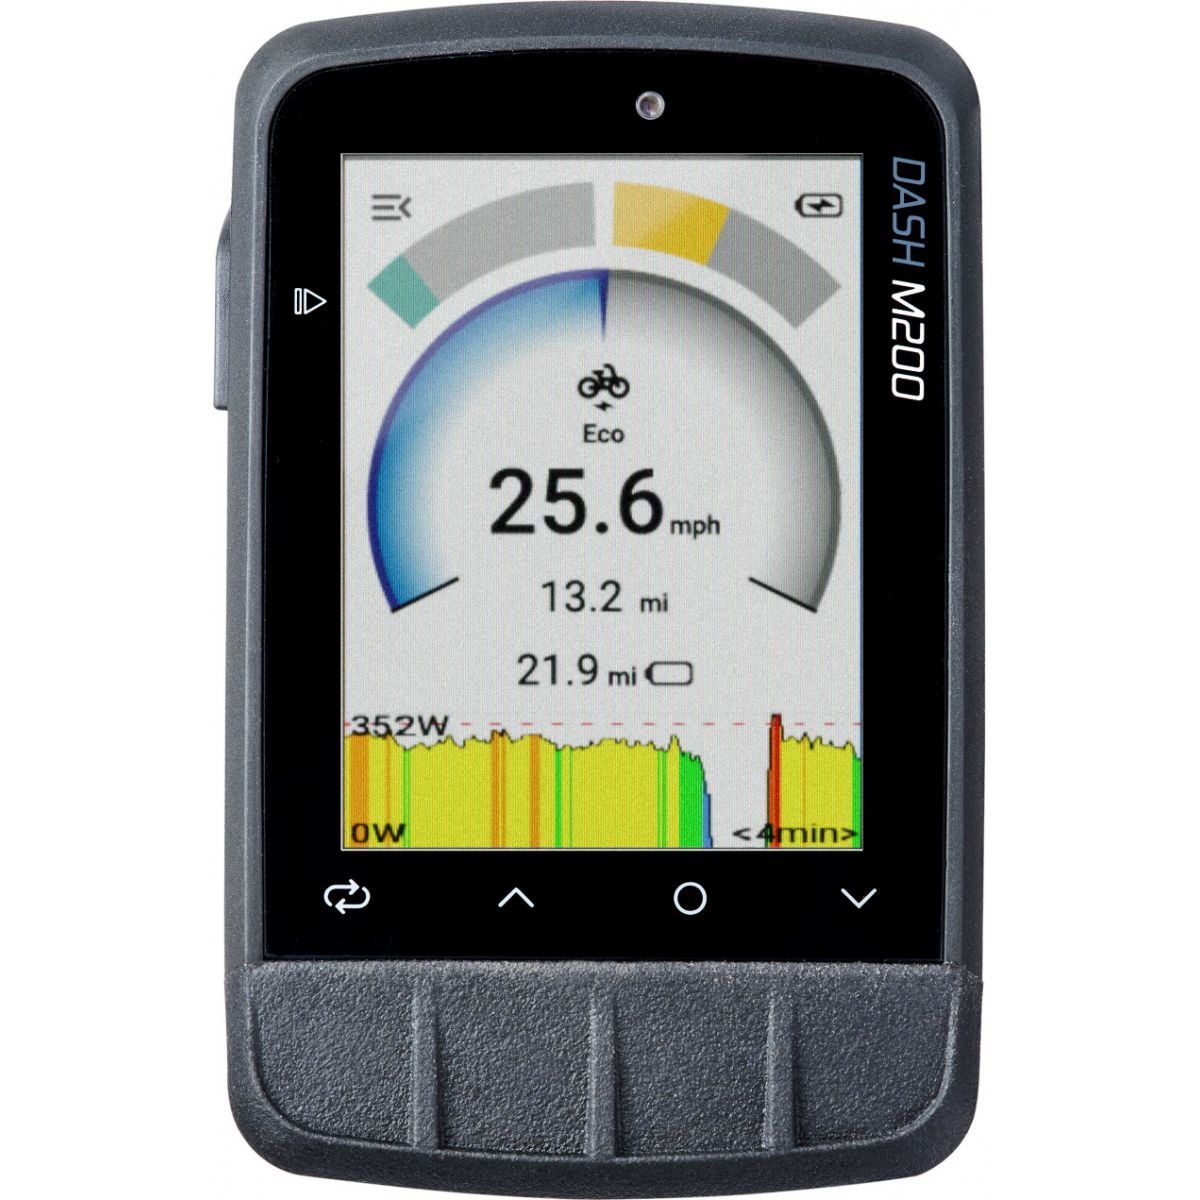 GPS de bicicleta de mtb y carretera Giant Ride Dash M200 para seguir rutas o entrenos. Más barato que garmin